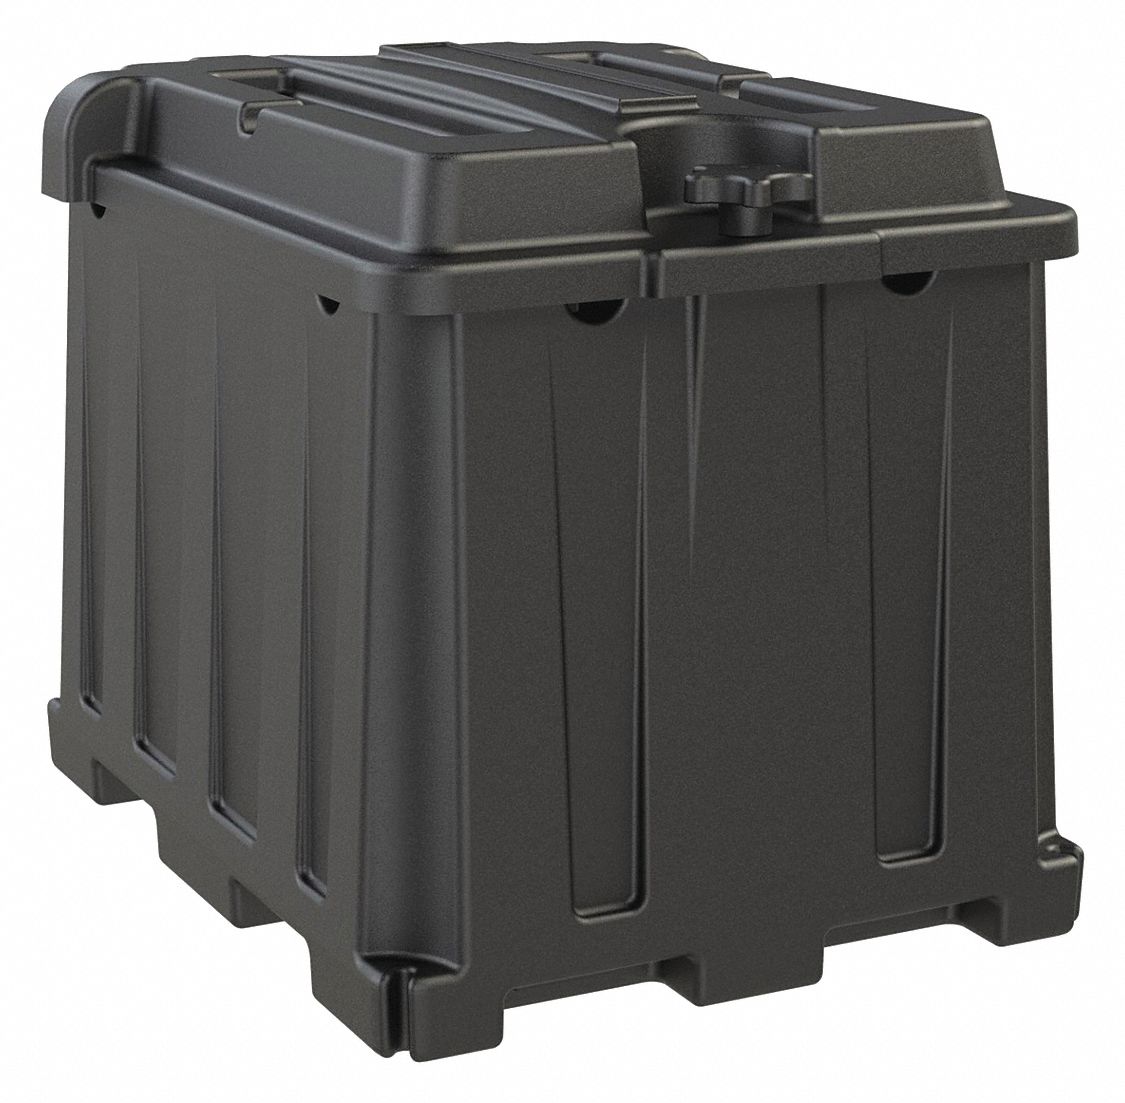 Battery Box, Blk, 14-39/64" L x 10-1/2" W